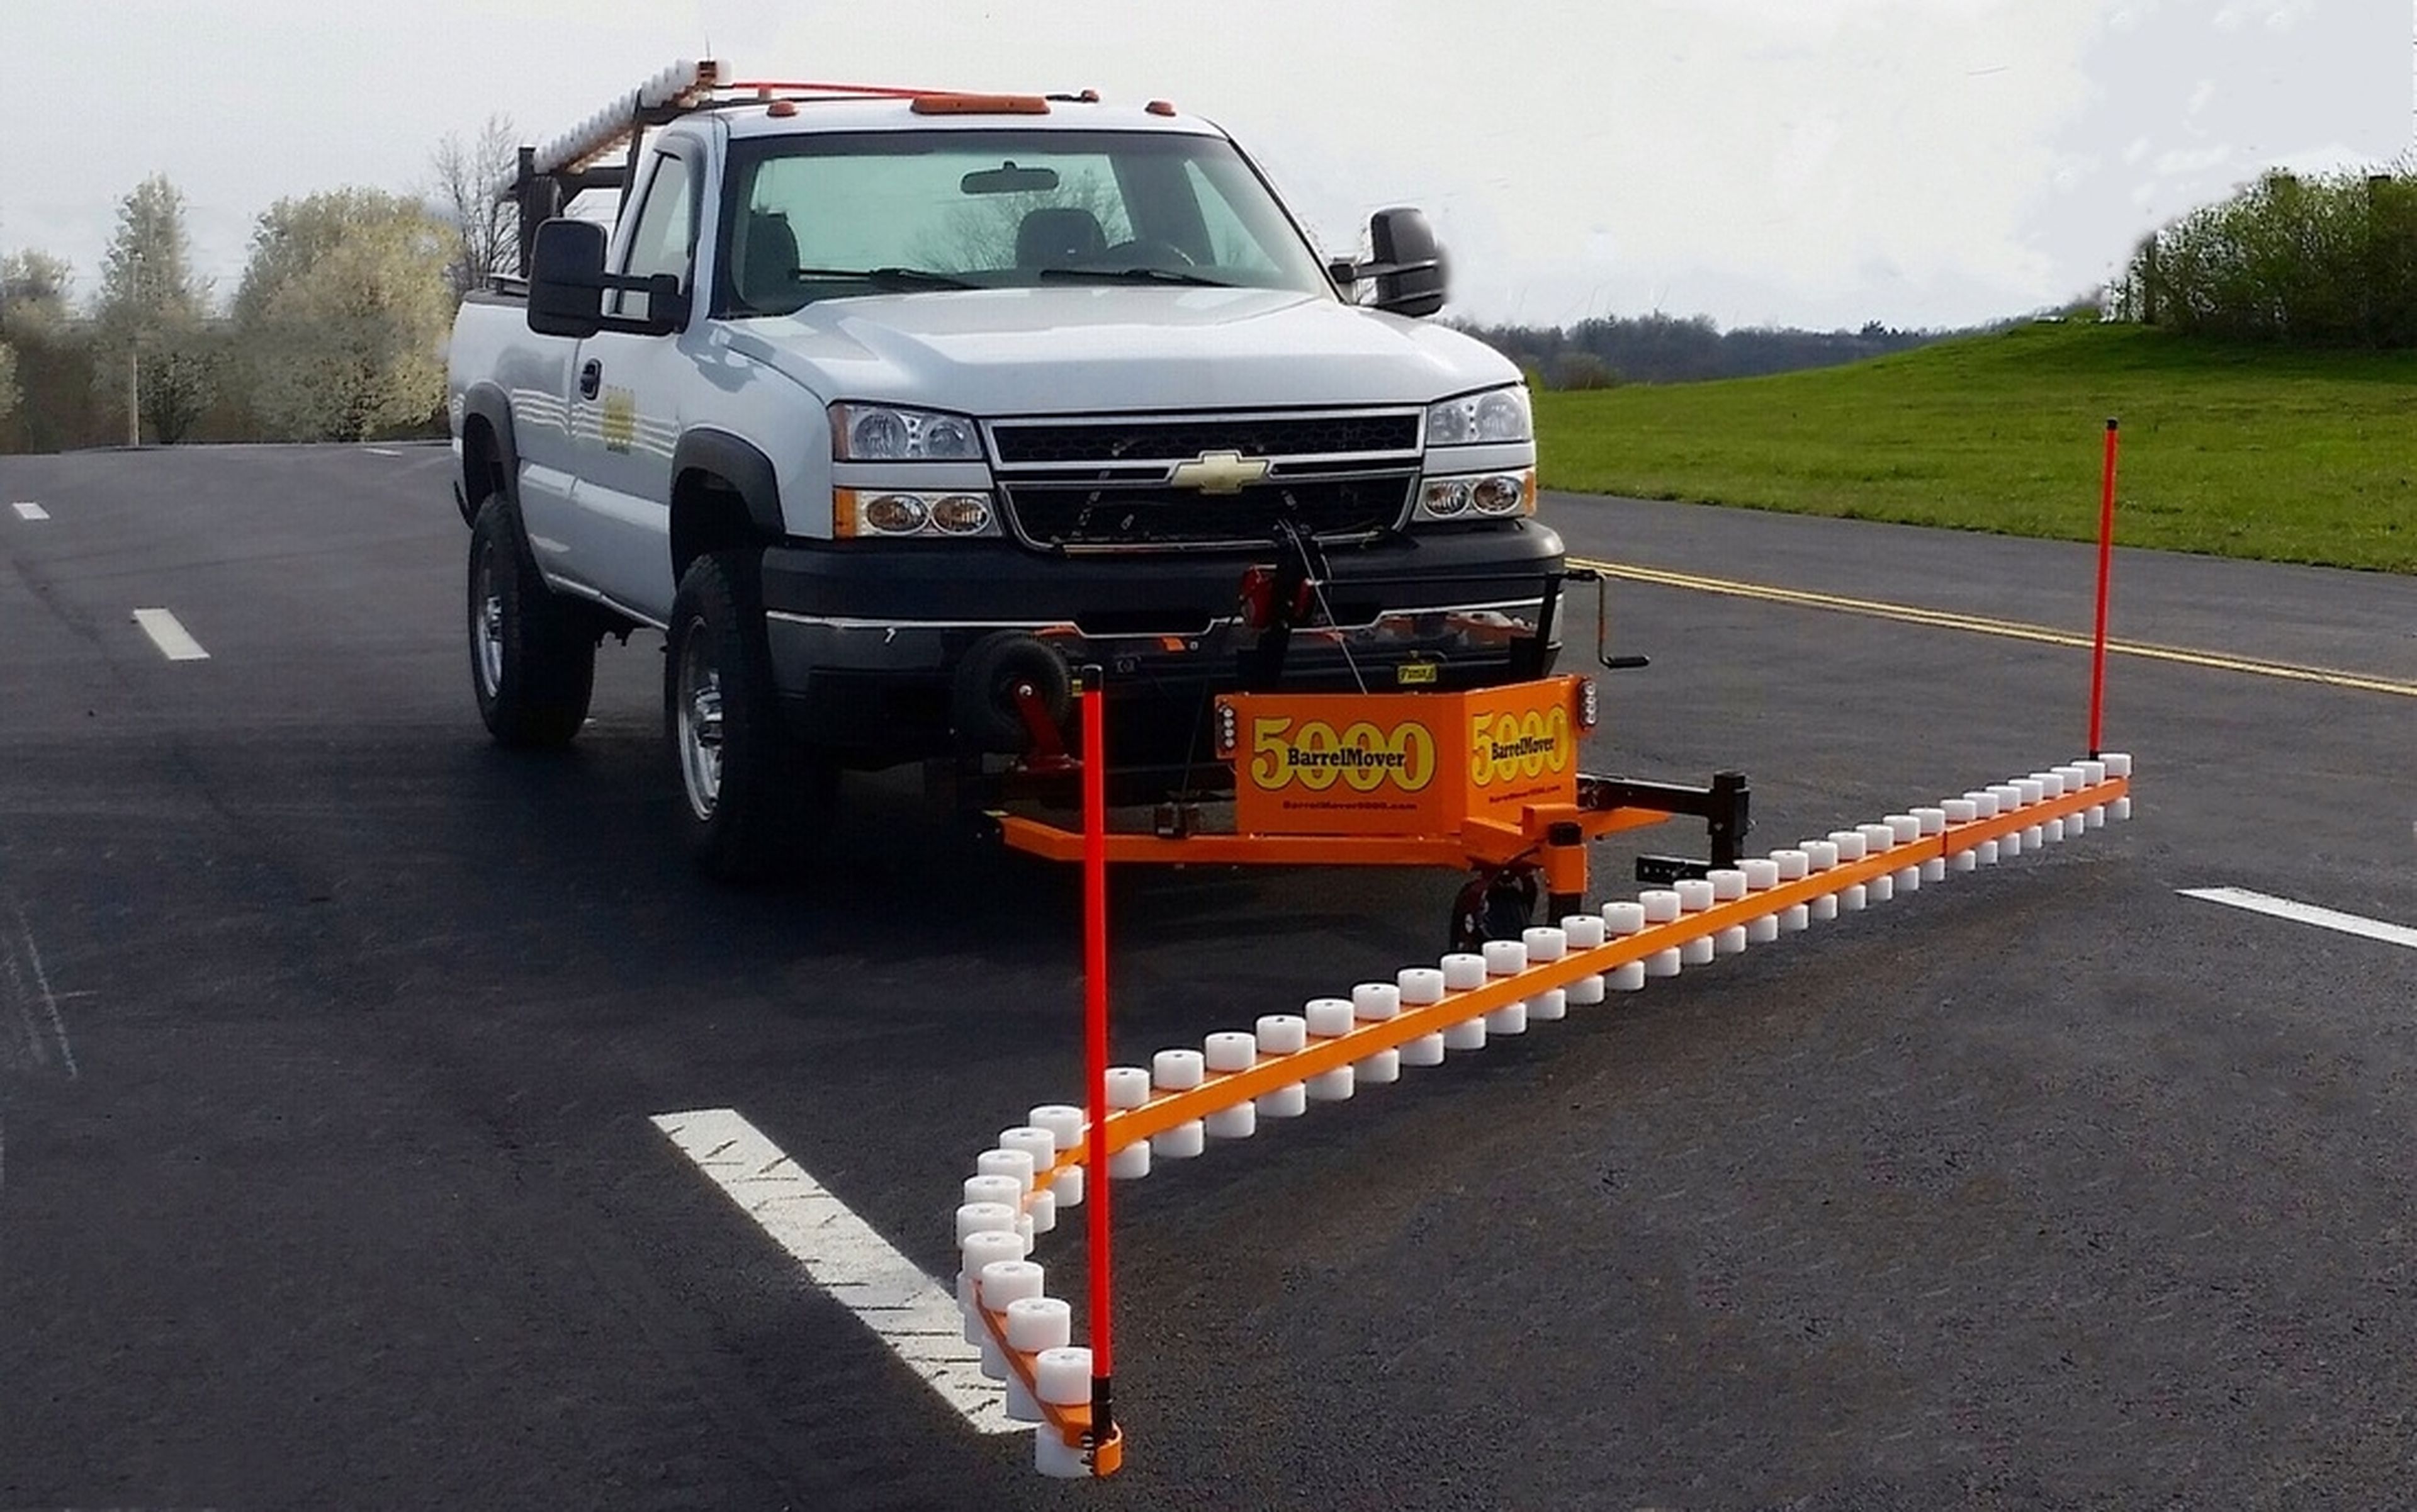 Este mueve barreras automático retira los conos de las carreteras